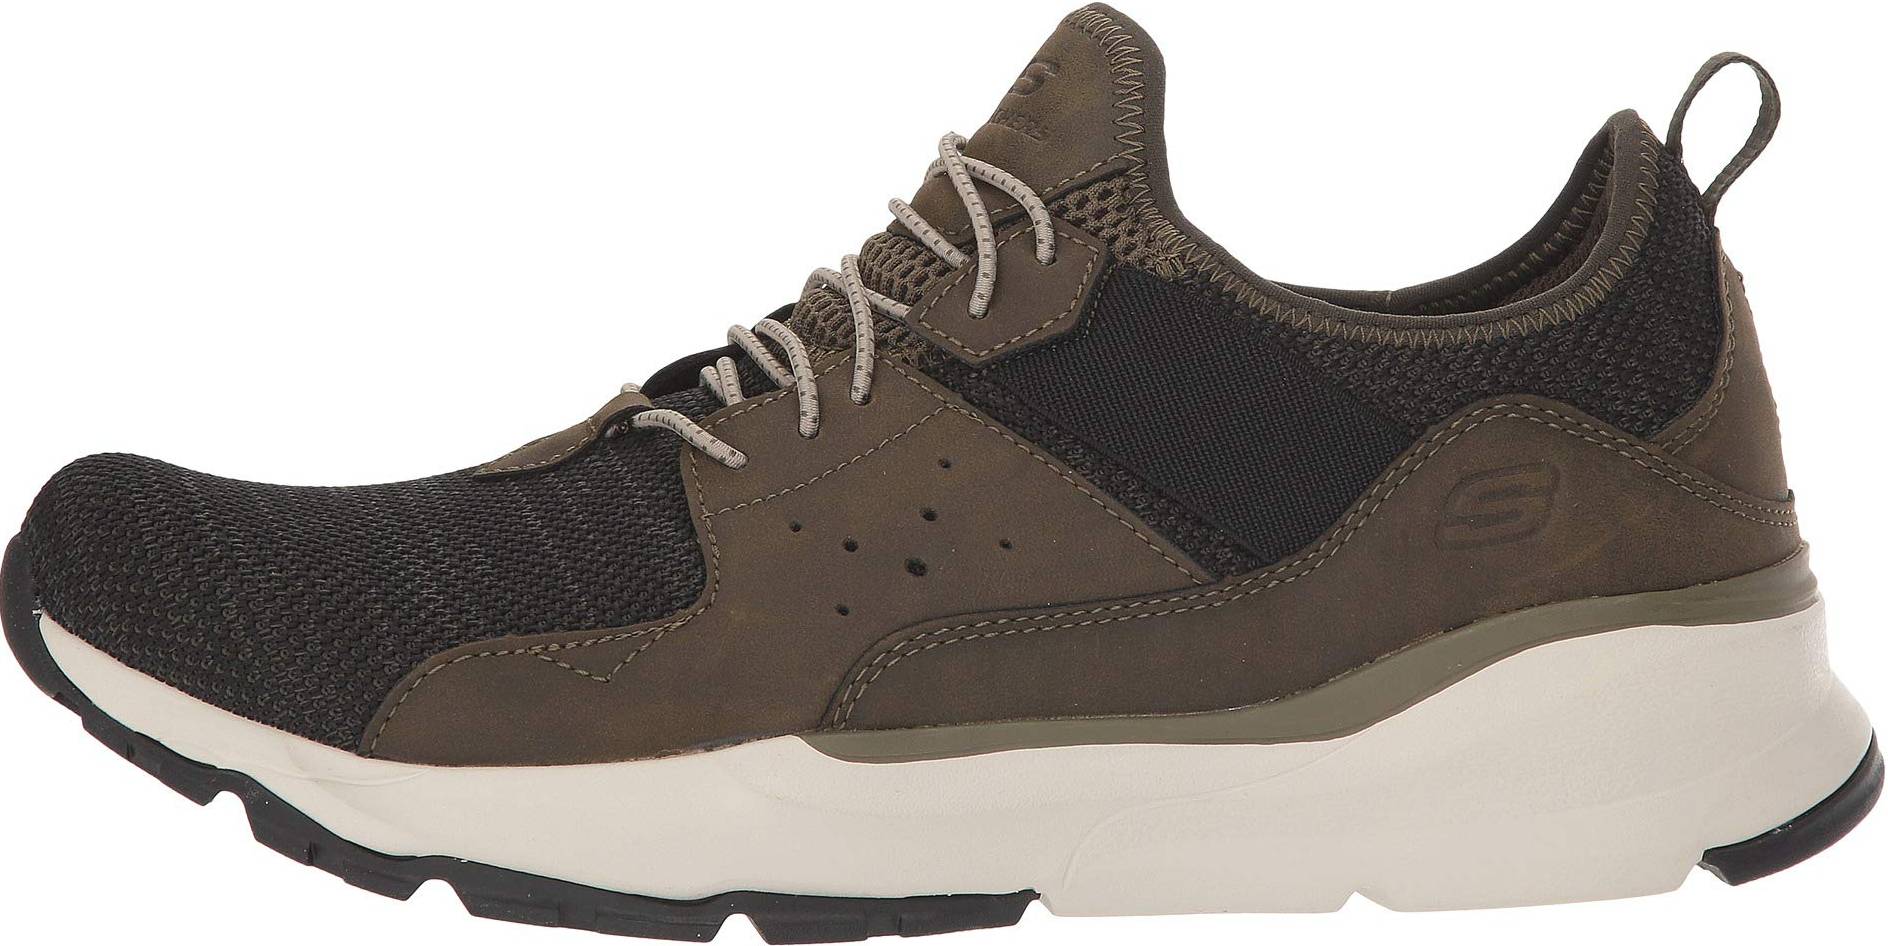 Degenerar colonia Ondas Infrastructure-intelligenceShops | Tênis Skechers Bountiful Be Kind Lilás  sneakers in green + grey (only £66) | shoes skechers the happs 52185 bbk  black